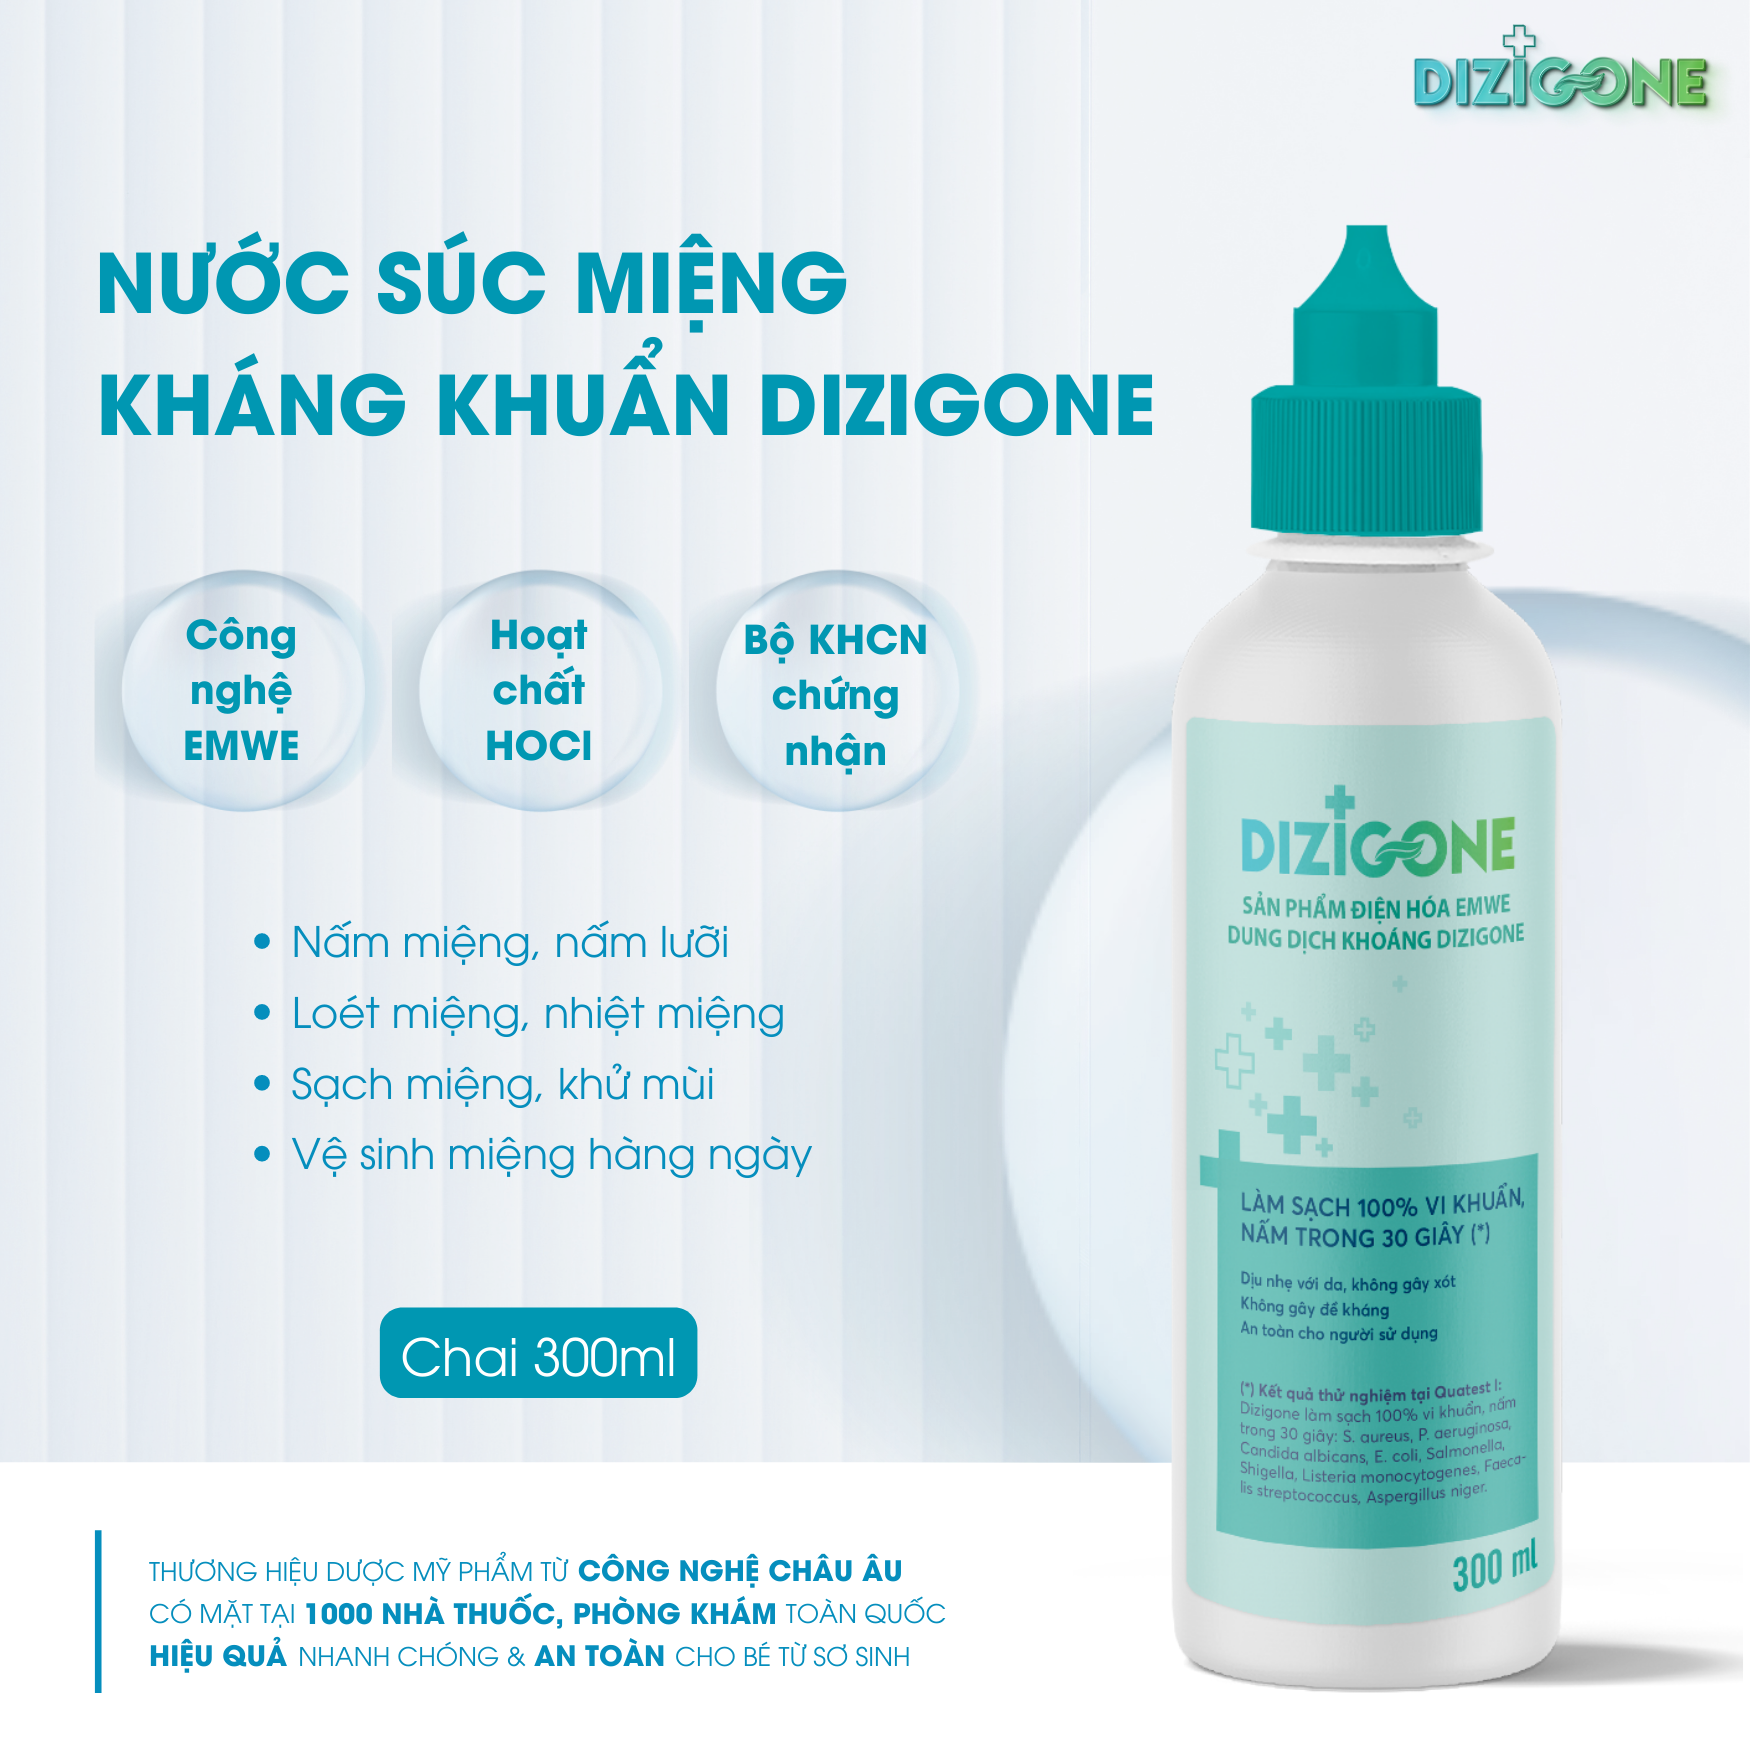 Nước súc miệng Dizigone 300ml dùng cho người bị loét miệng, nhiệt miệng, hôi miệng - hiệu quả sau 24 giờ.